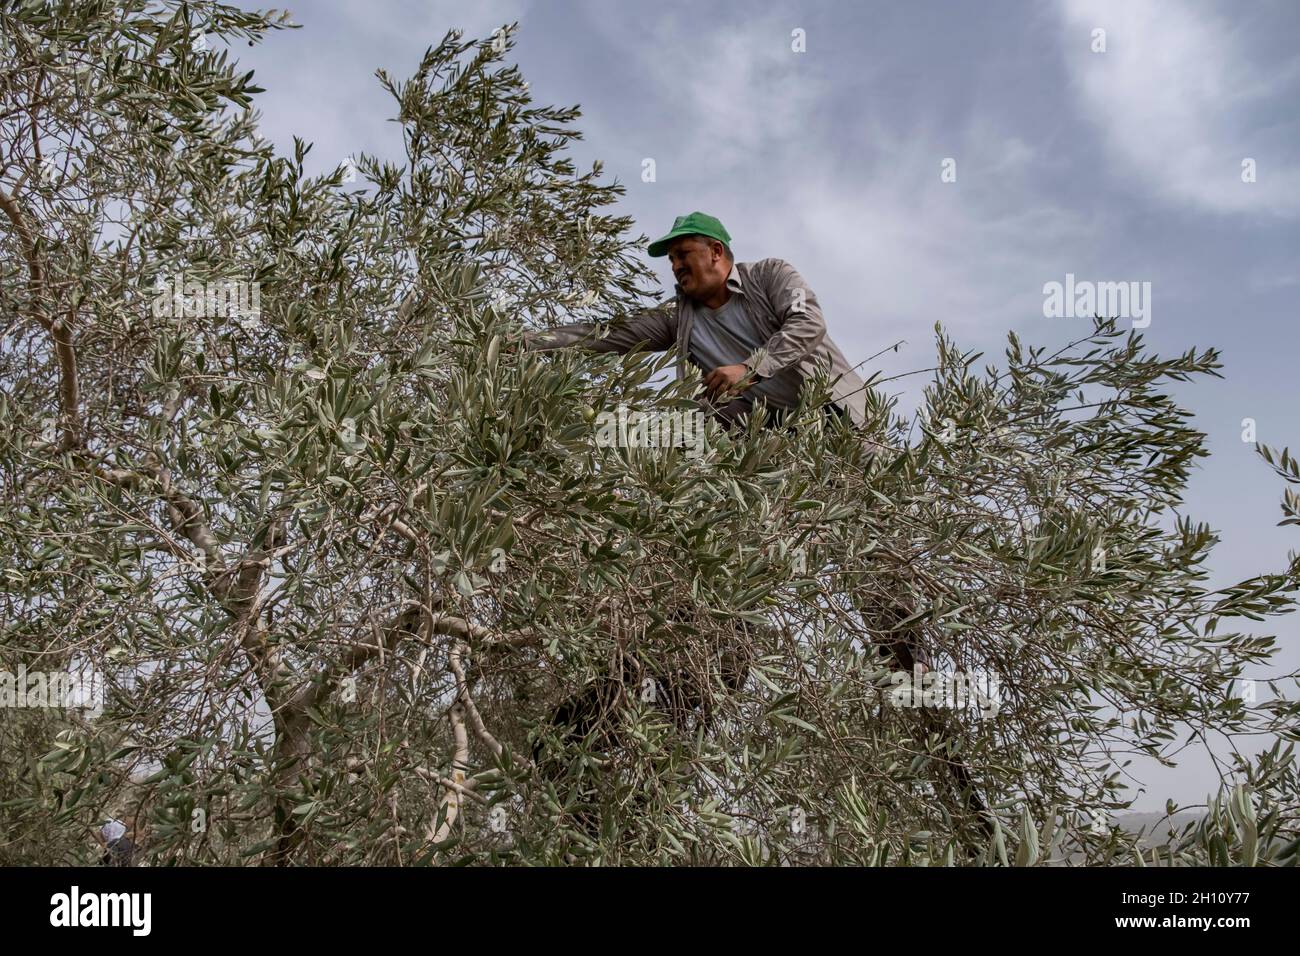 Un palestinien recueille des olives dans une oliveraie située le long de l'autoroute 5, reliant la côte méditerranéenne aux colonies israéliennes dans le nord de la Cisjordanie, près de la colonie israélienne d'Ariel, le 14 octobre 2021 en Cisjordanie, Israël.La récolte d'olives est un rituel palestinien ancien, qui marque le changement des saisons autour d'octobre et de novembre.L'industrie de l'huile d'olive est importante pour les communautés palestiniennes, avec ses bénéfices qui soutiennent les moyens de subsistance d'environ 80,000 000 familles. Banque D'Images